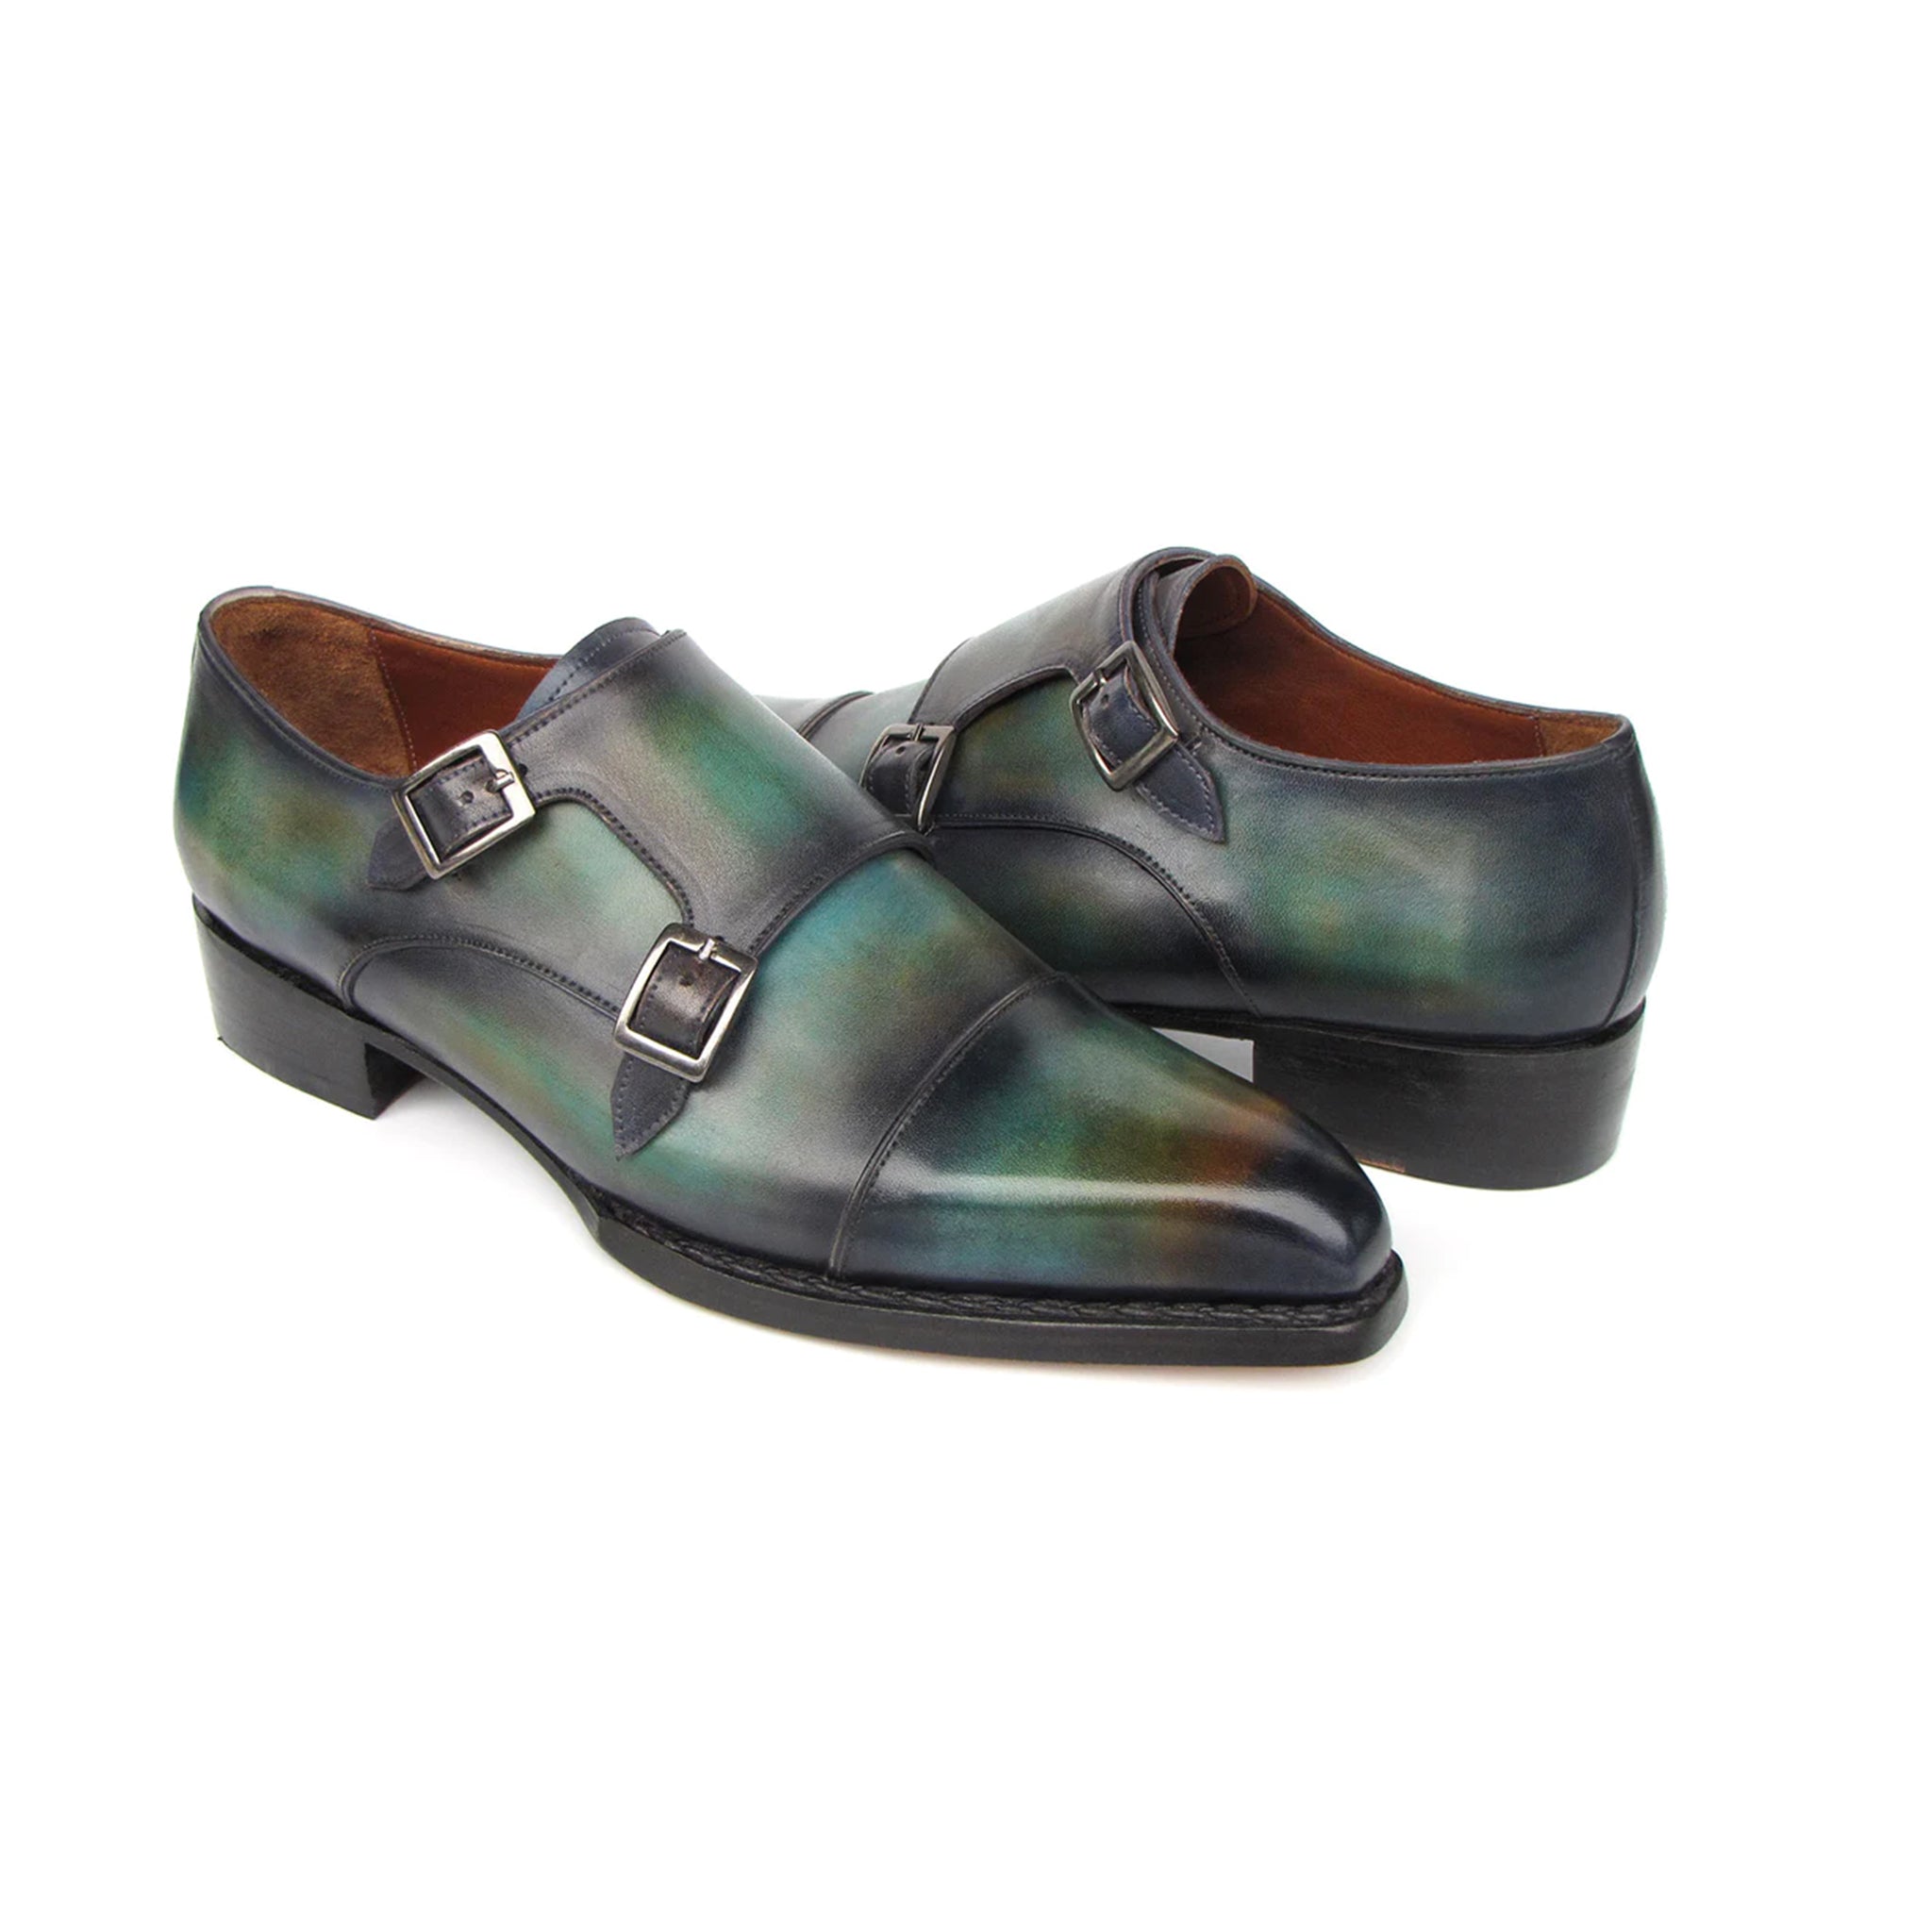 Men's Cap Toe Double Monkstrap Shoes Green & Blue Patina